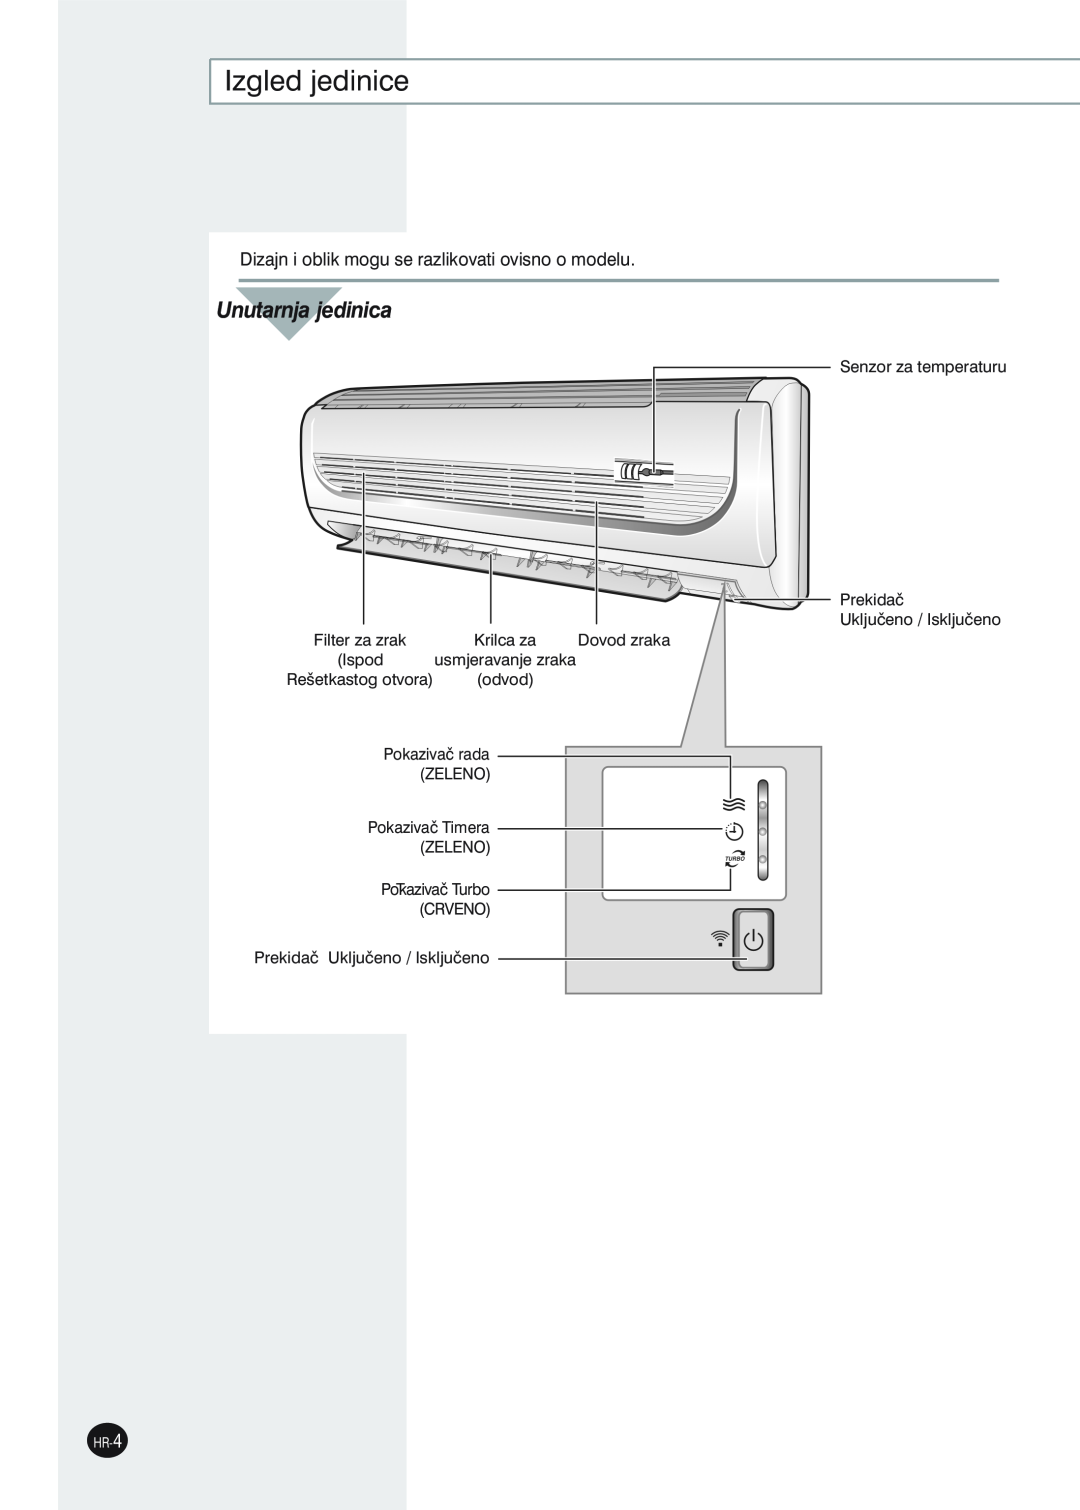 Samsung SH12ZWHDX Izgled jedinice, Unutarnja jedinica, Filter za zrak, Dovod zraka, usmjeravanje zraka, Rešetkastog otvora 